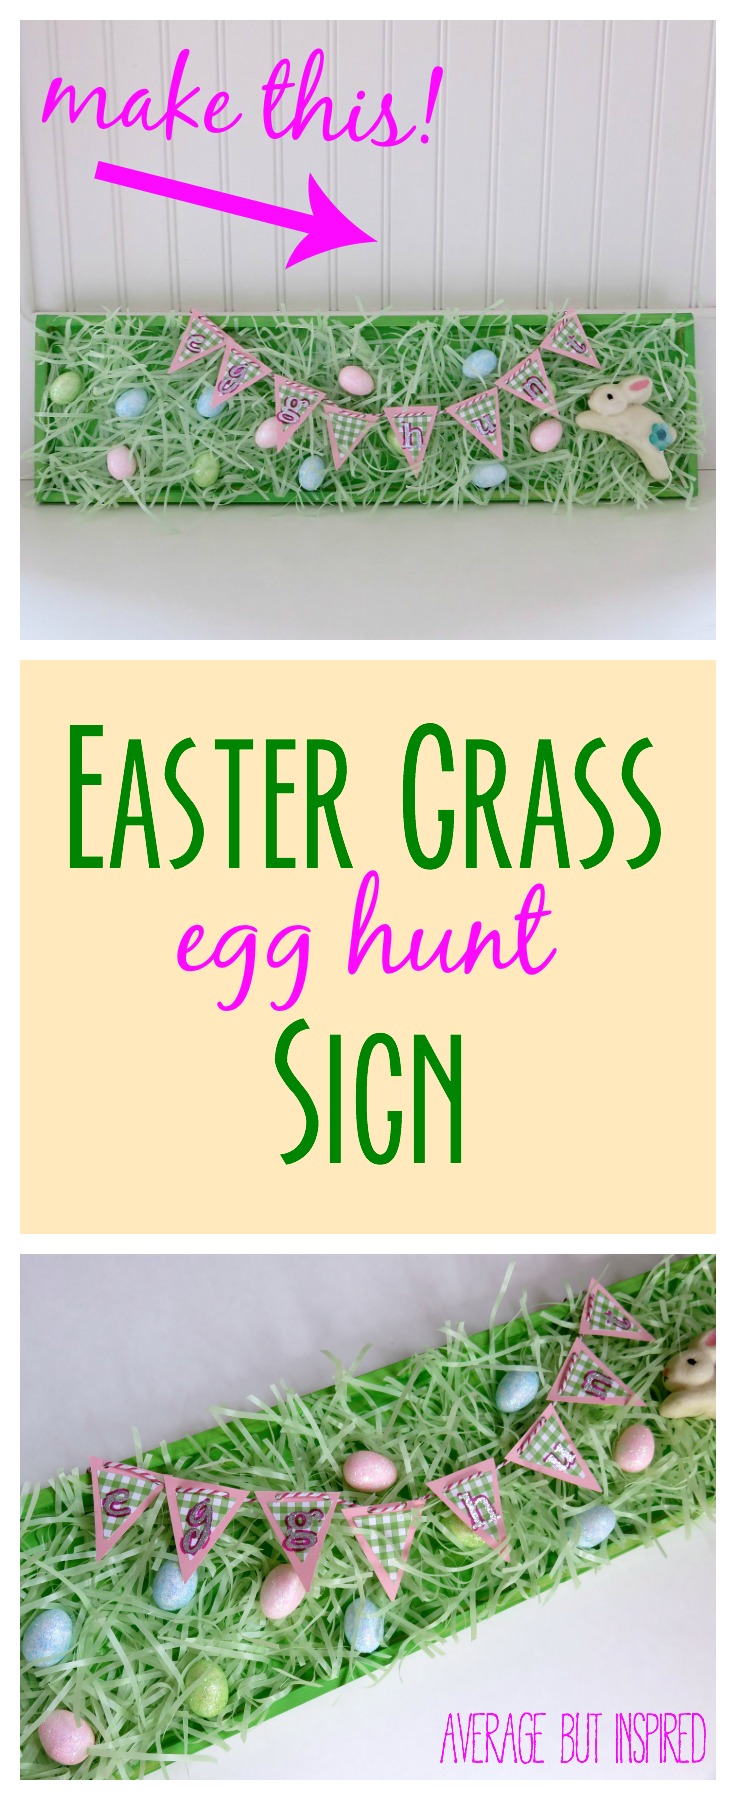 Easter-Grass-Egg-Hung-Sign avergae inspired